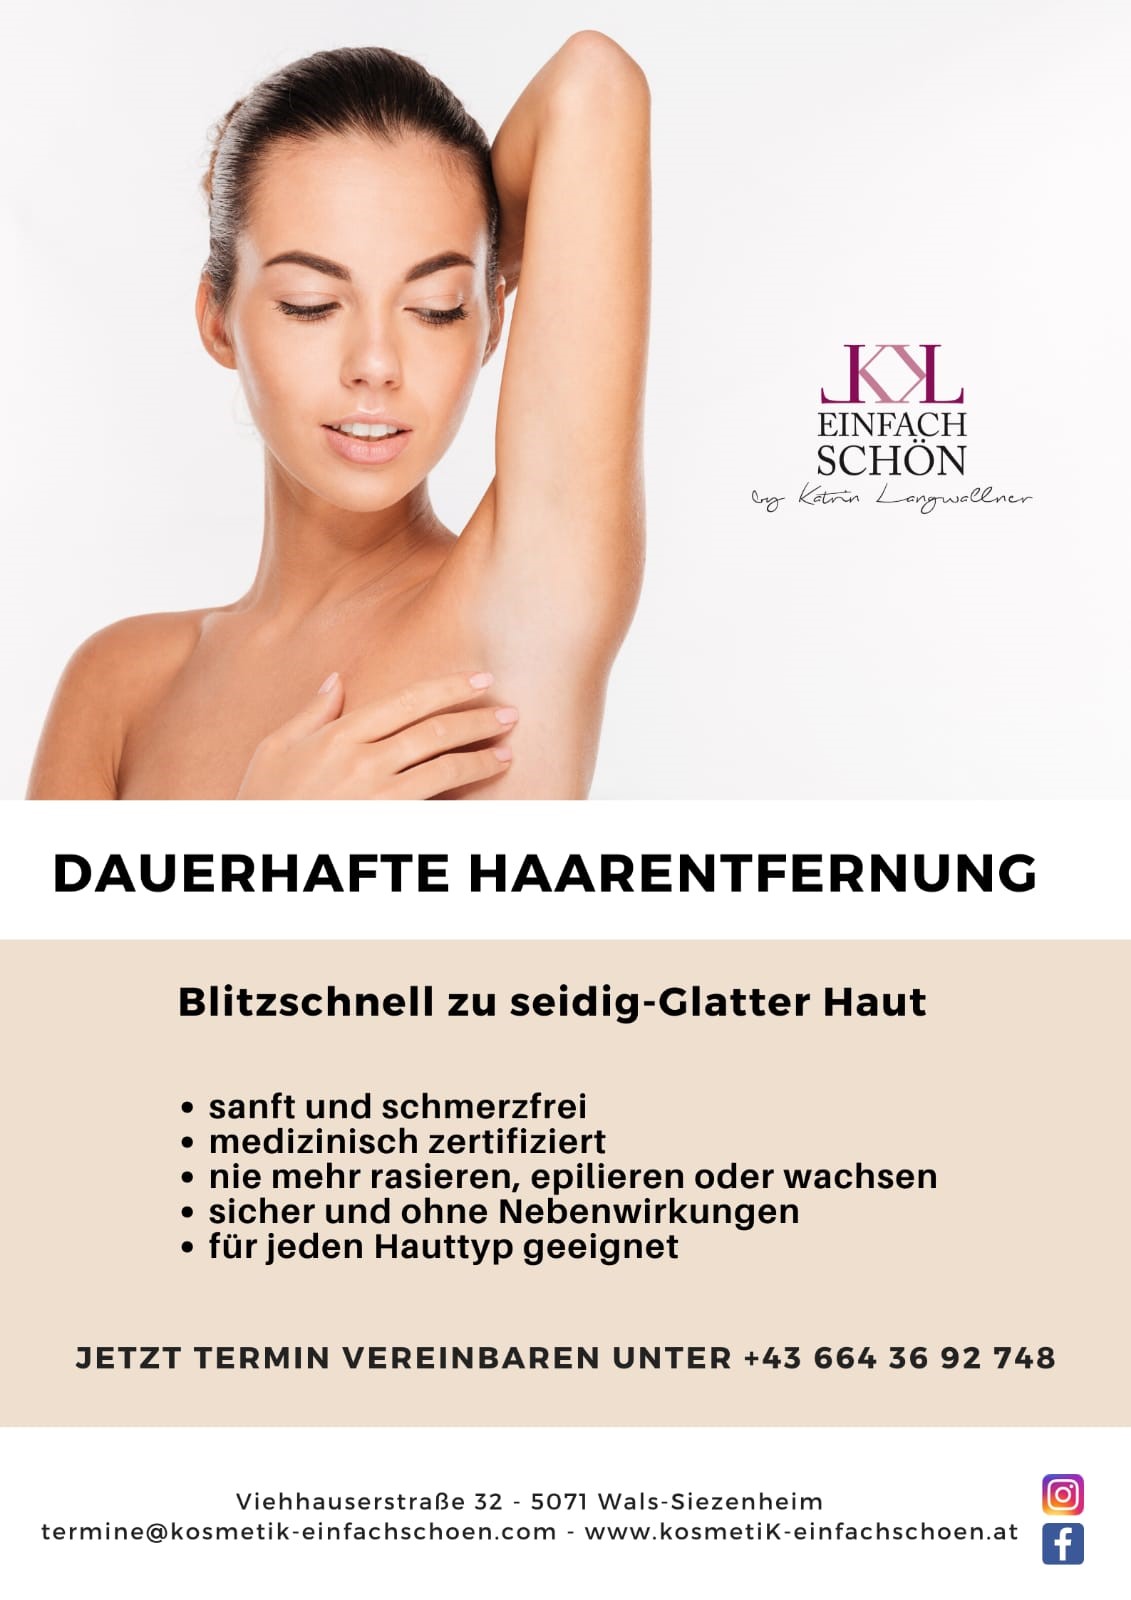 Dauerhafte Haarentfernung bei einfach schön by Katrin Langwallner, ONLINESHOP & KOSMETIKSTUDIO